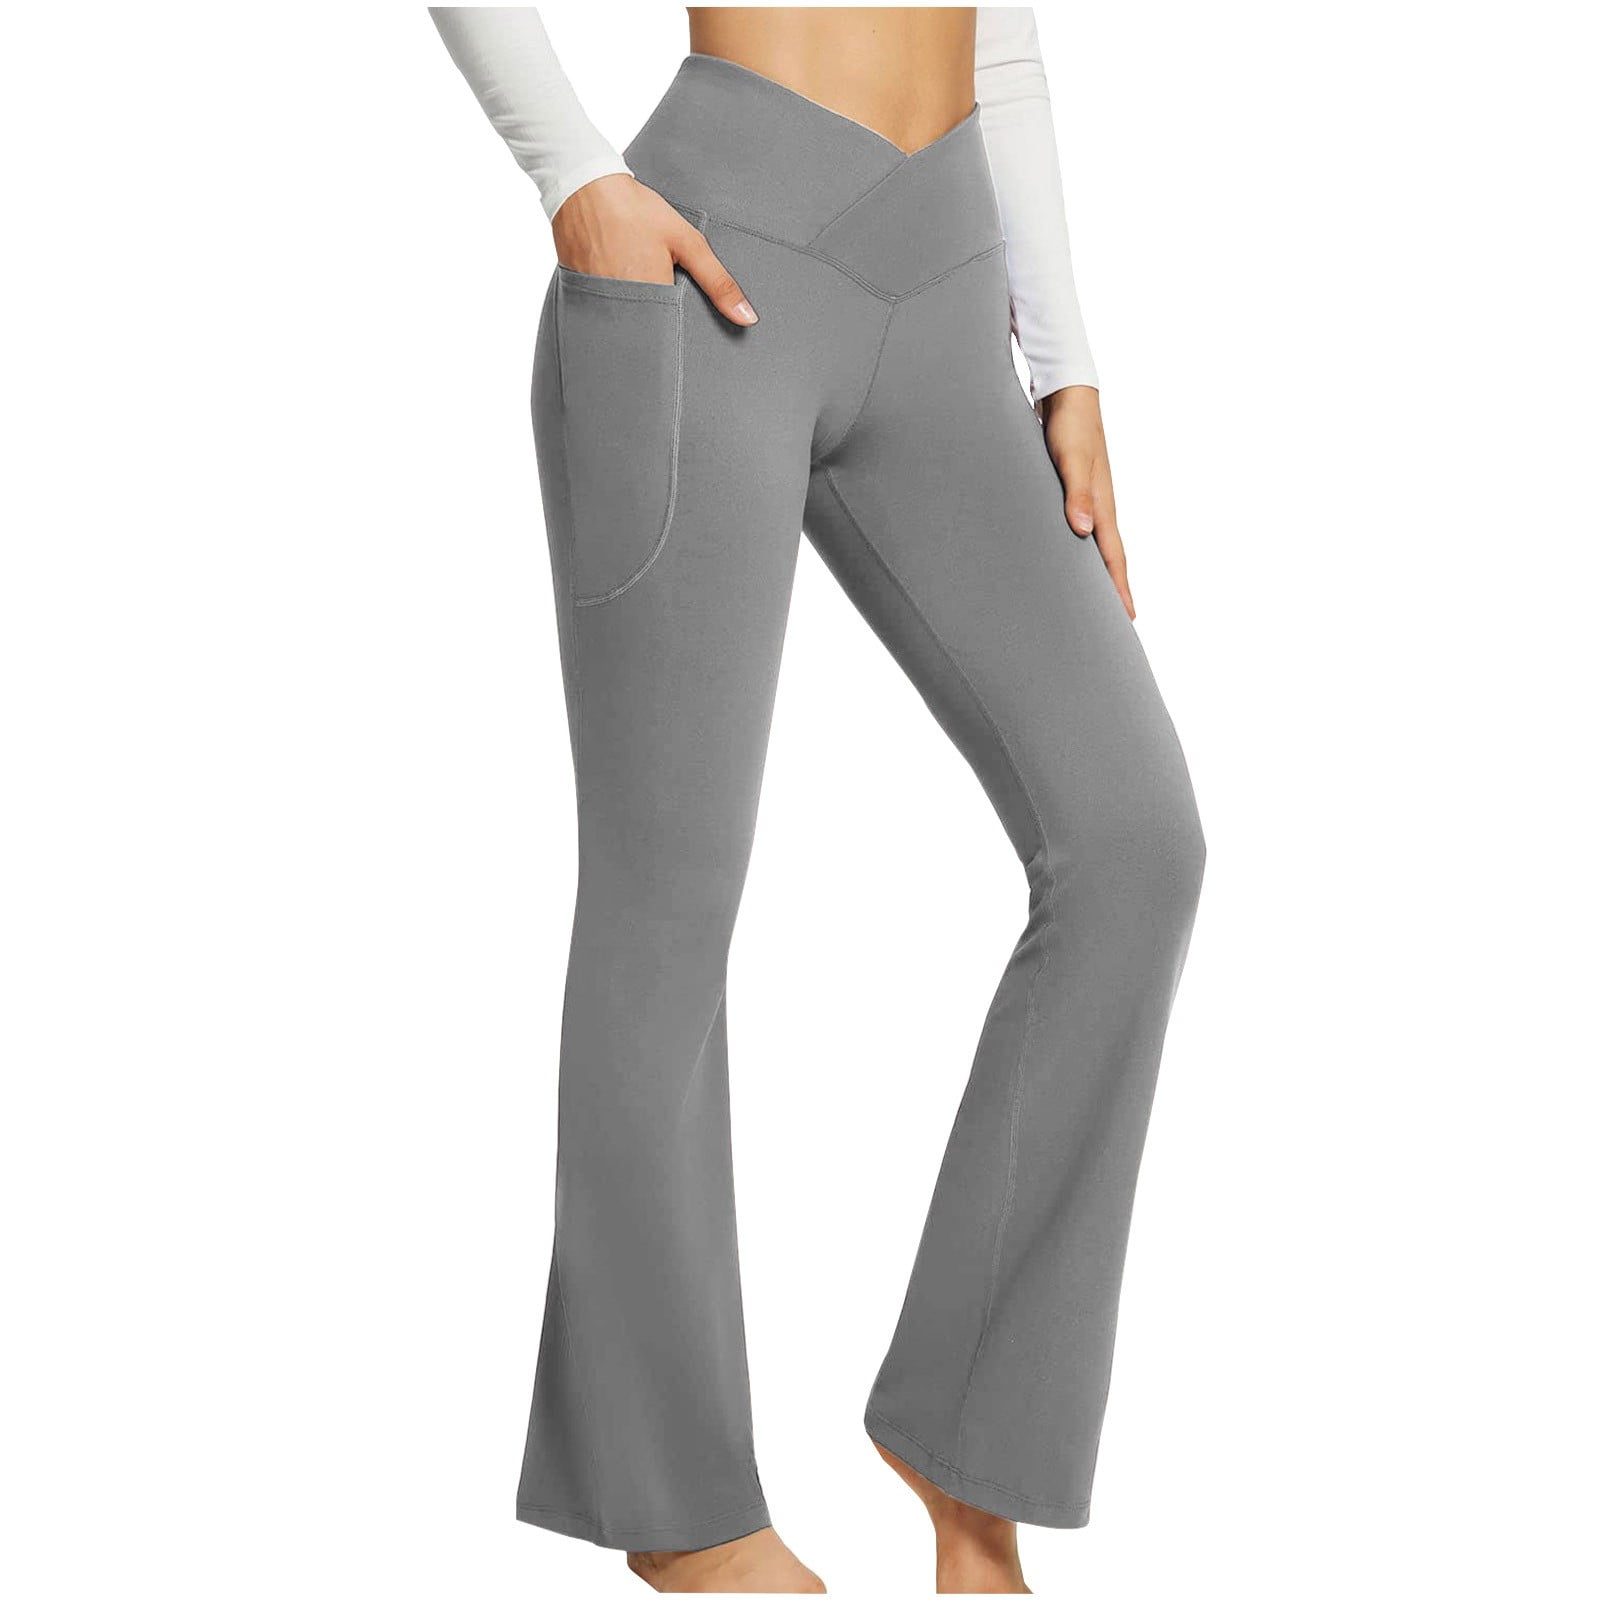 Bootcut Yoga Pants Plus Size